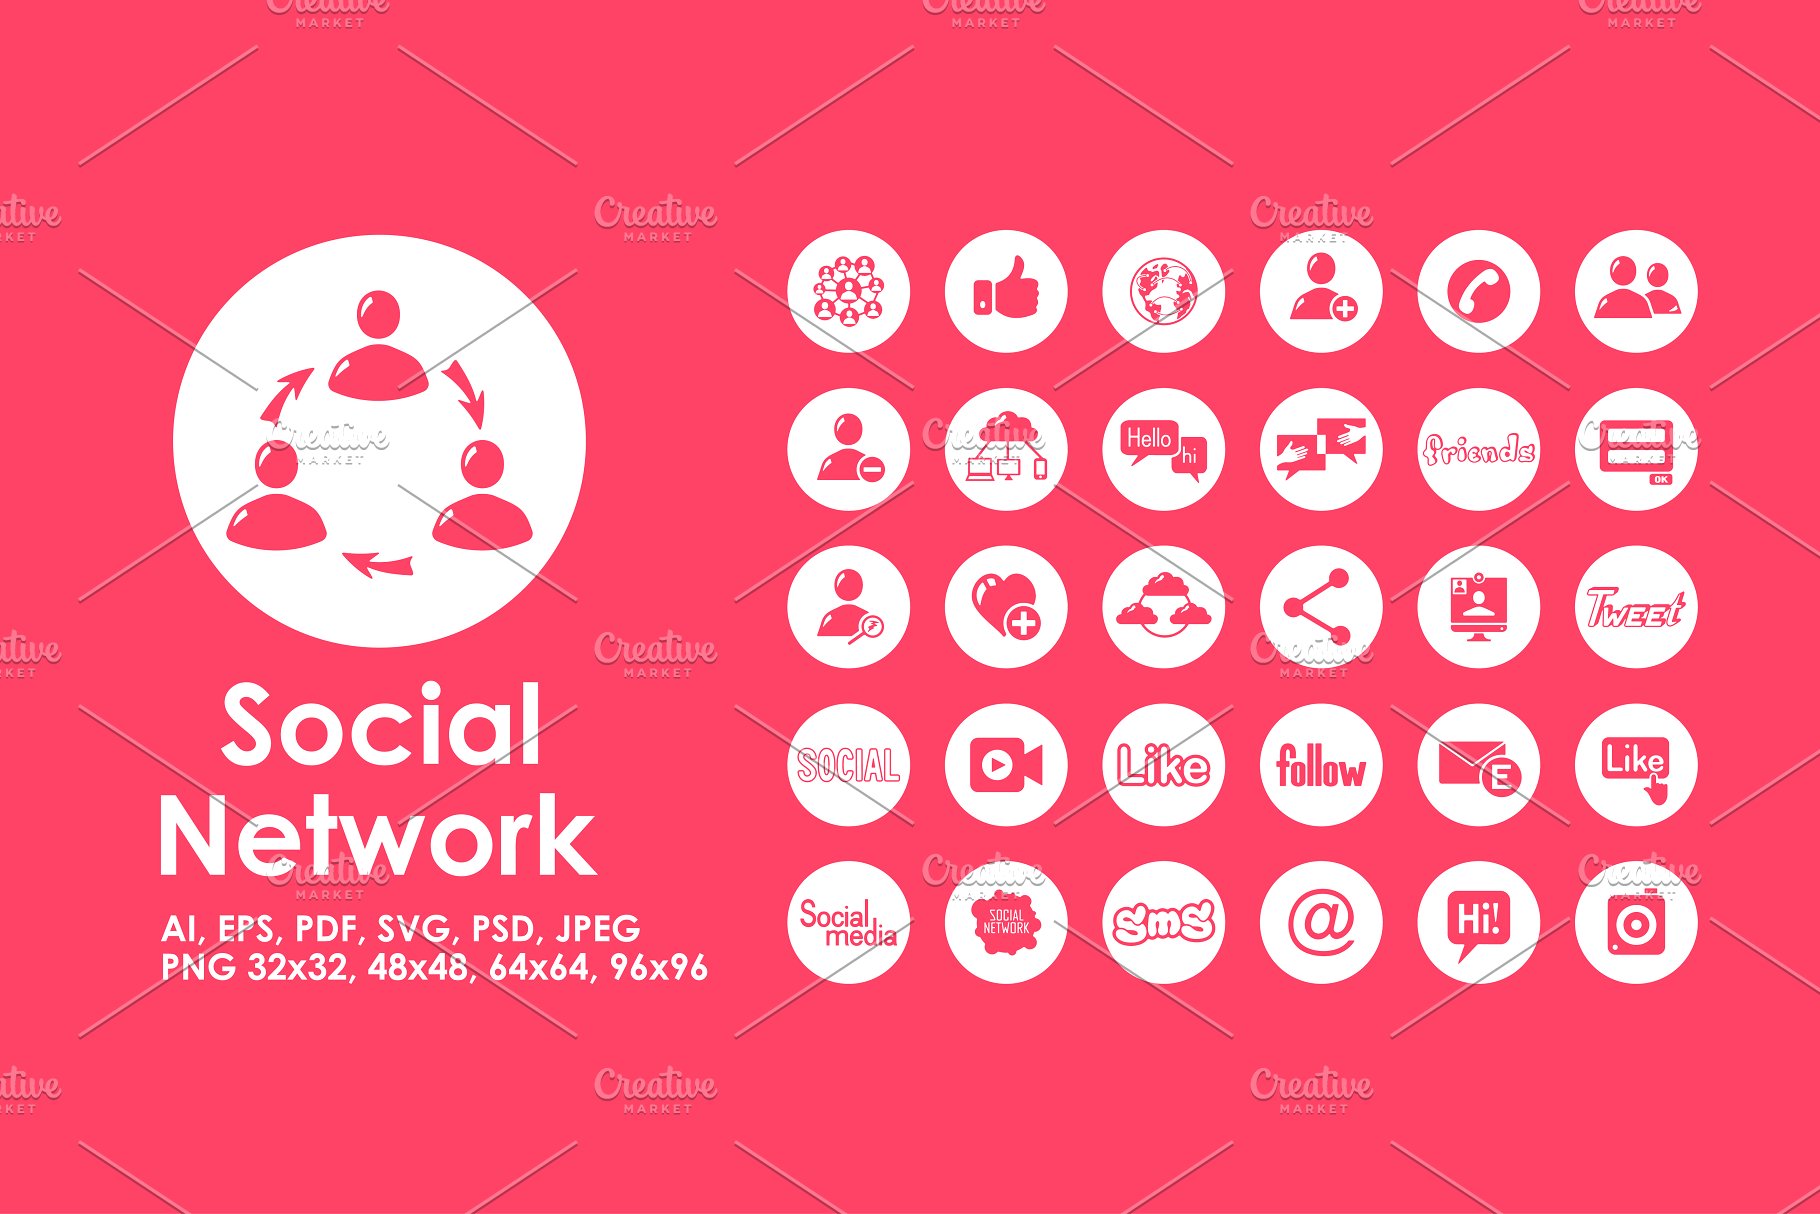 简洁网络社交应用图标  Social network icons插图